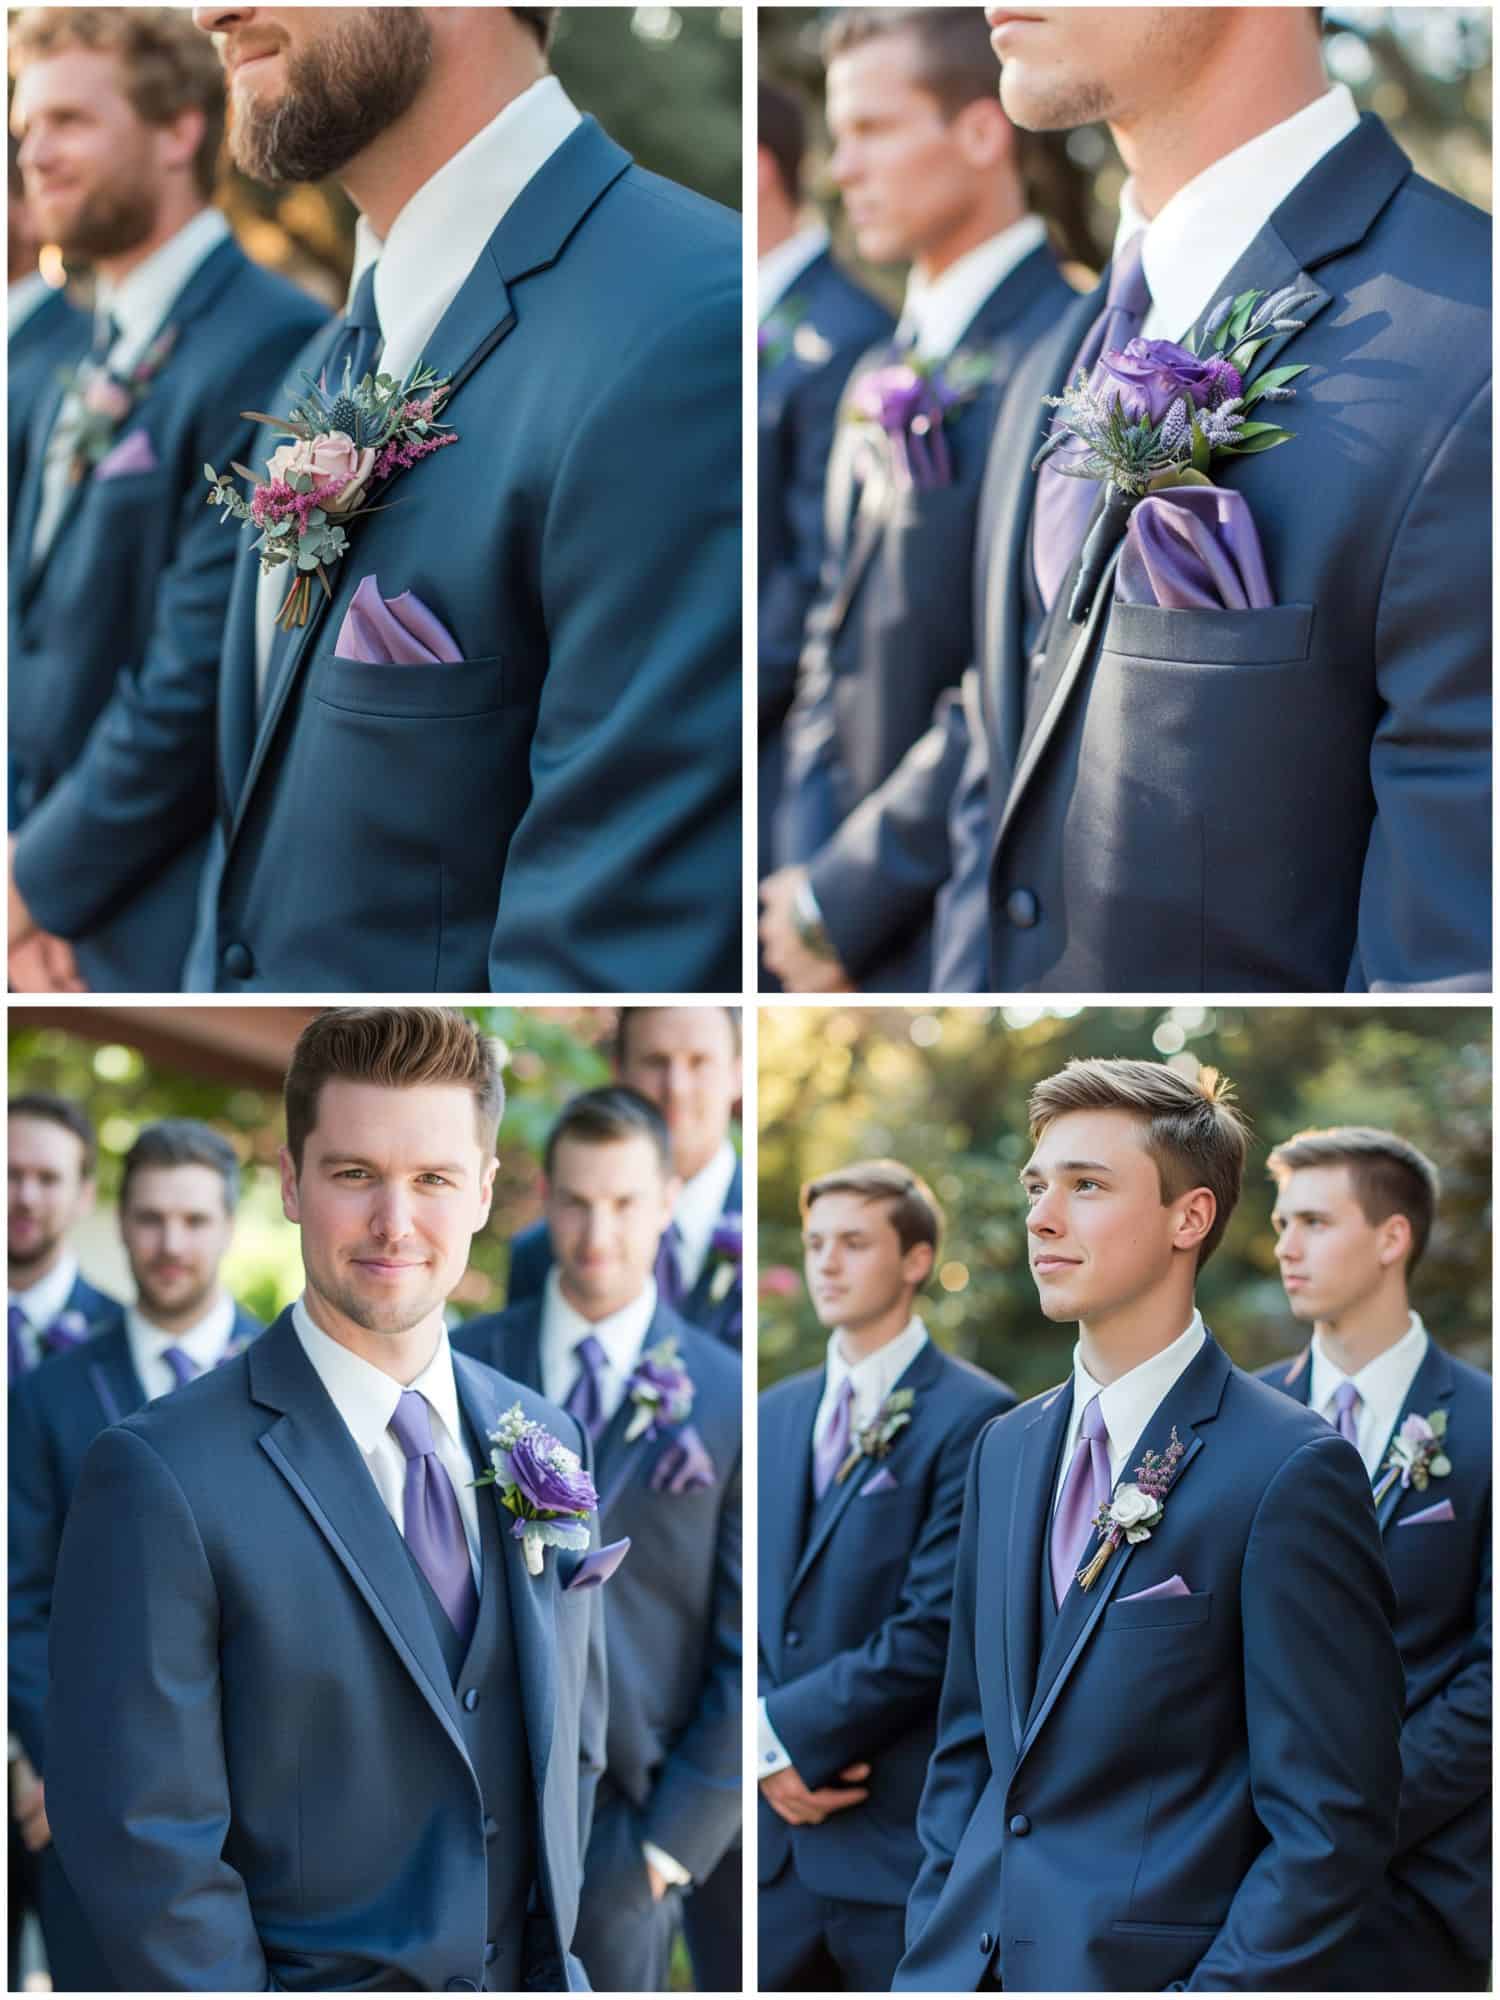 groomsmen attire in blue and purple